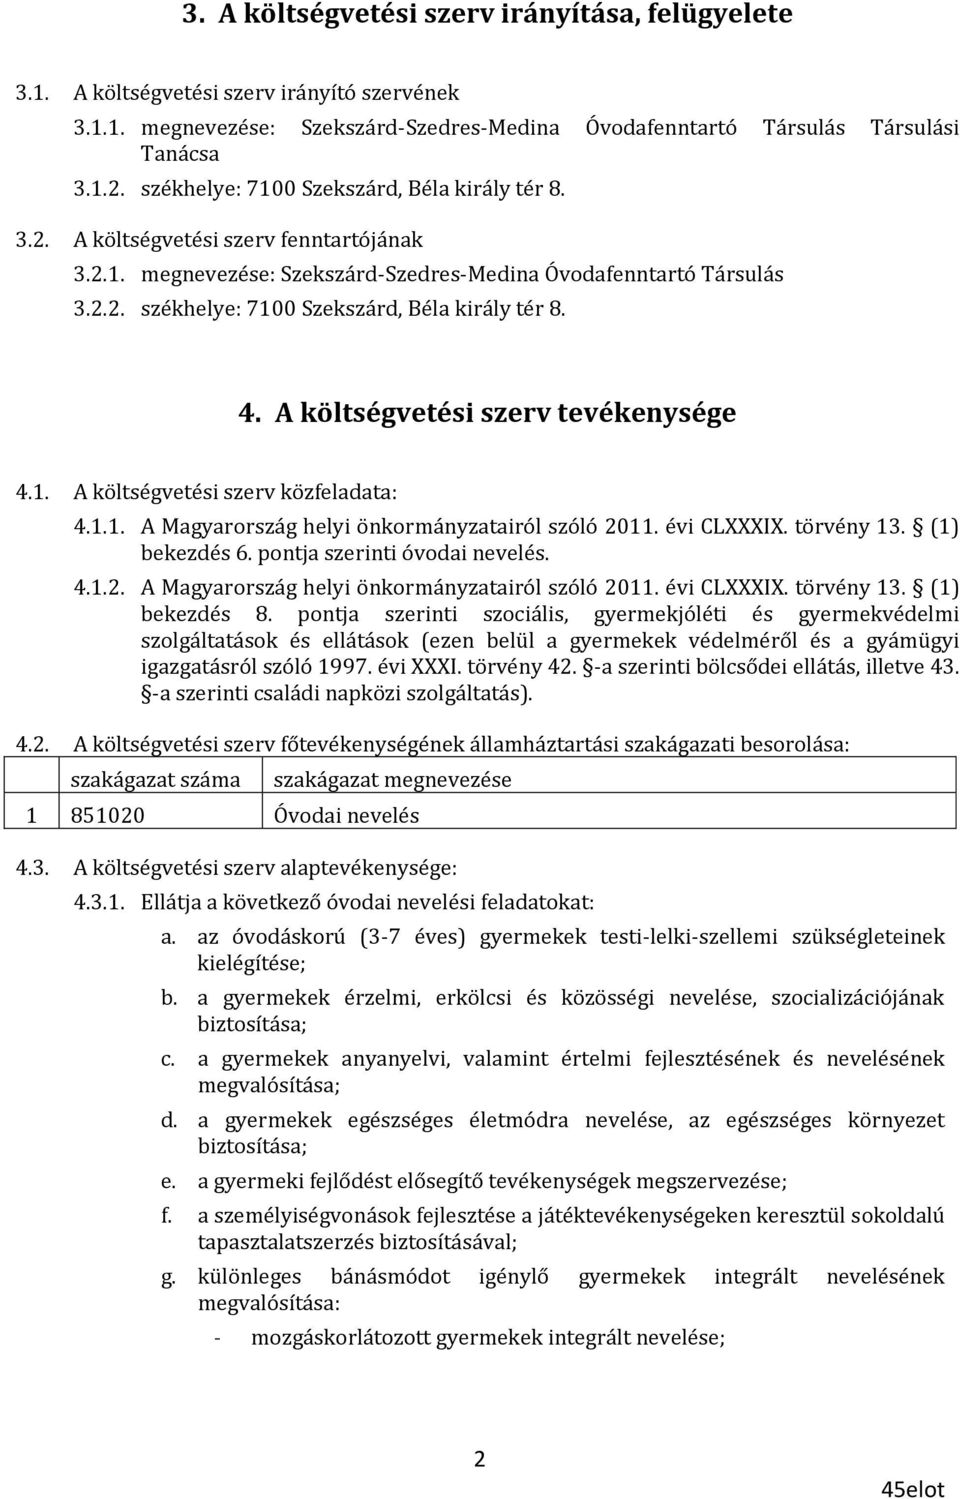 4. A költségvetési szerv tevékenysége 4.1. A költségvetési szerv közfeladata: 4.1.1. A Magyarország helyi önkormányzatairól szóló 2011. évi CLXXXIX. törvény 13. (1) bekezdés 6.